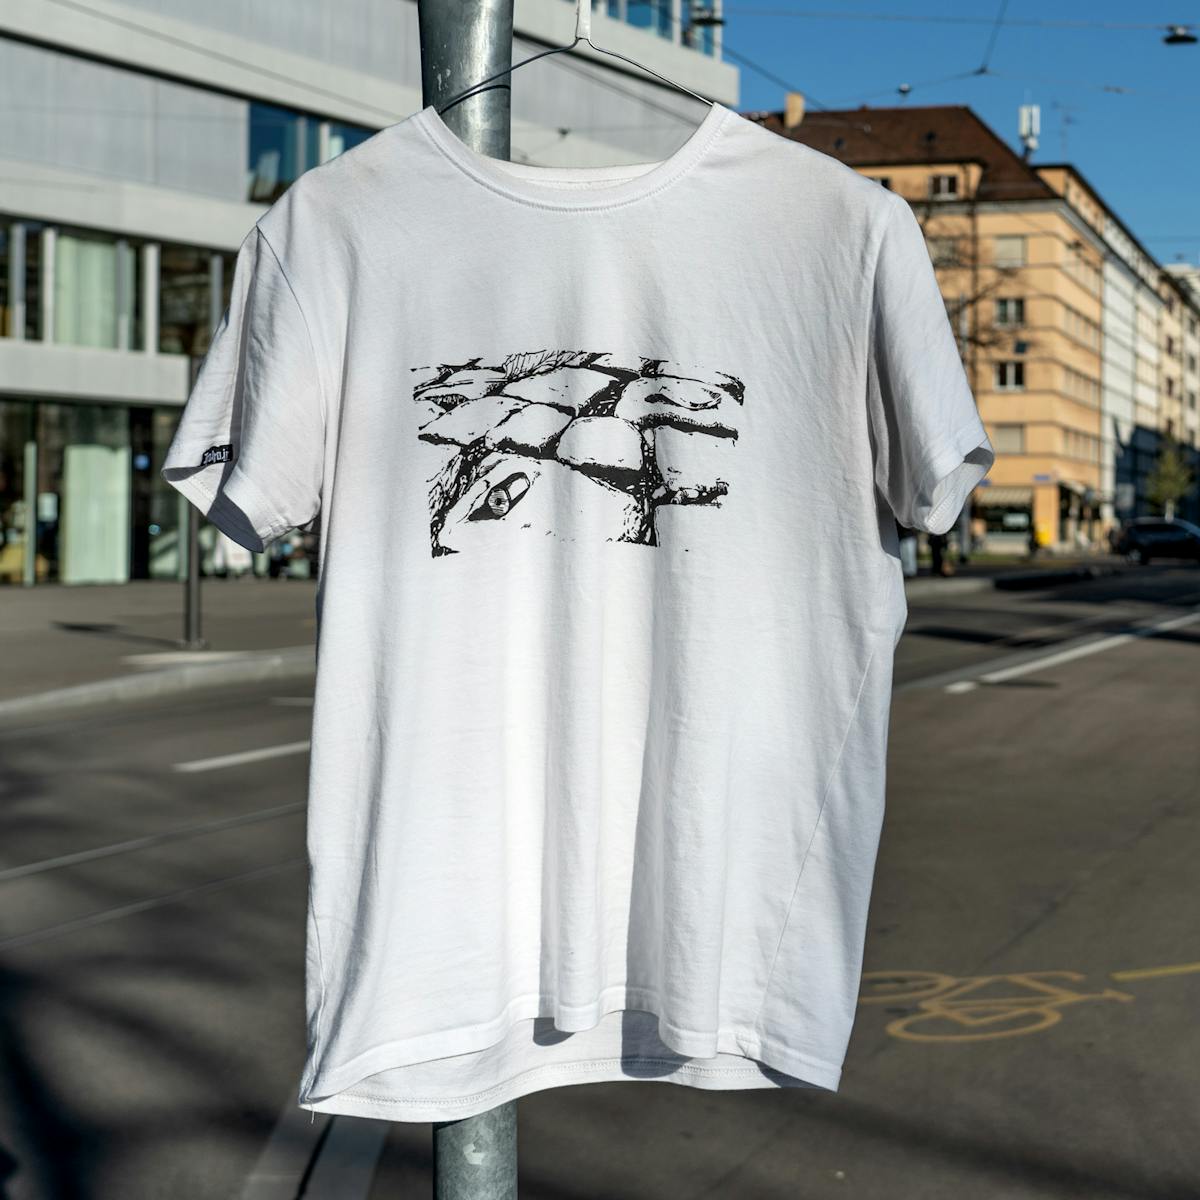 kopfstaipflaschter basel trottoir streetwear label rochade und basel nazi frei kampagne